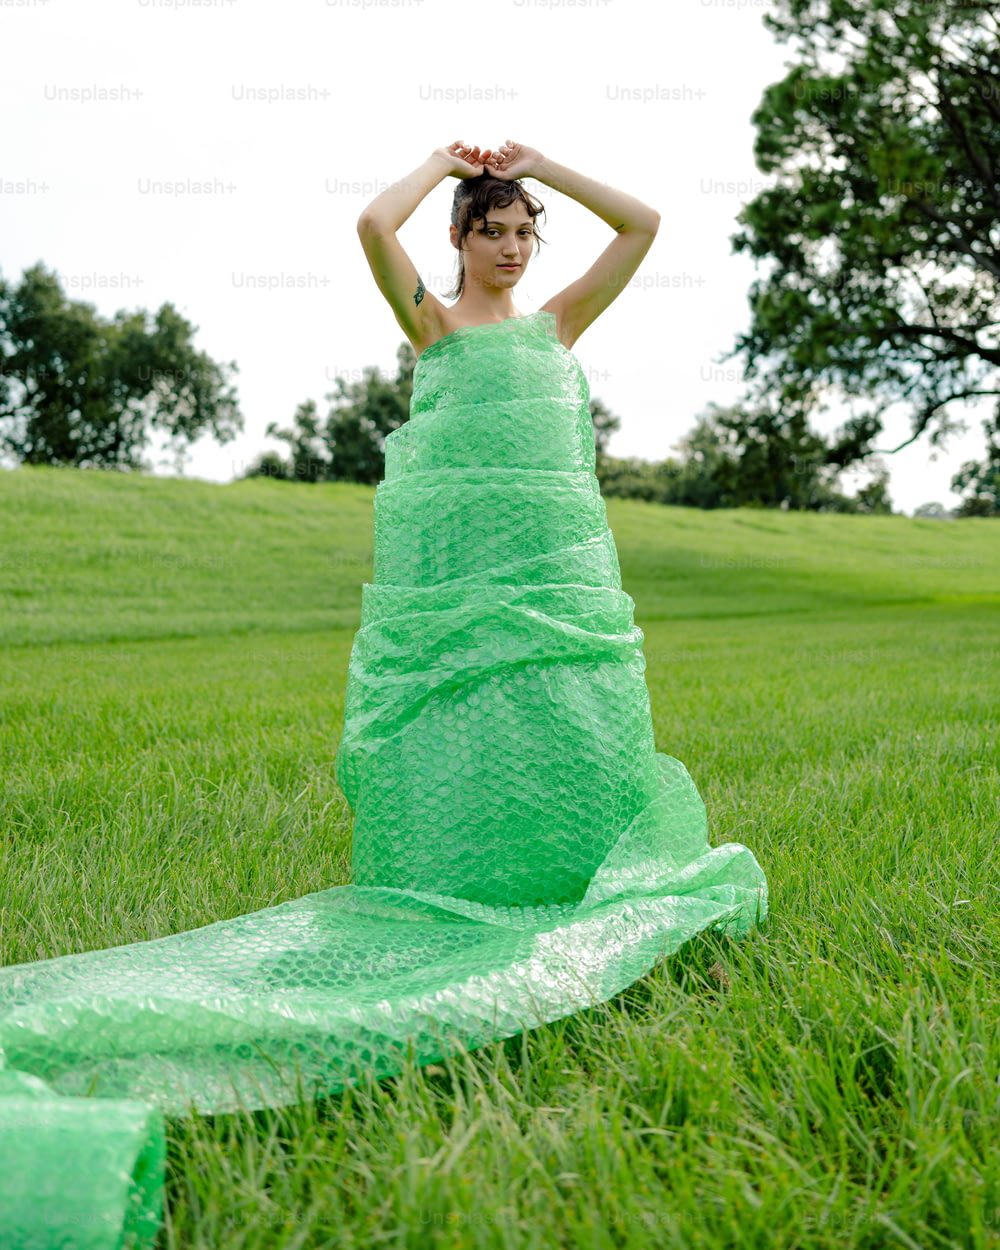 Une femme en robe verte assise dans l’herbe